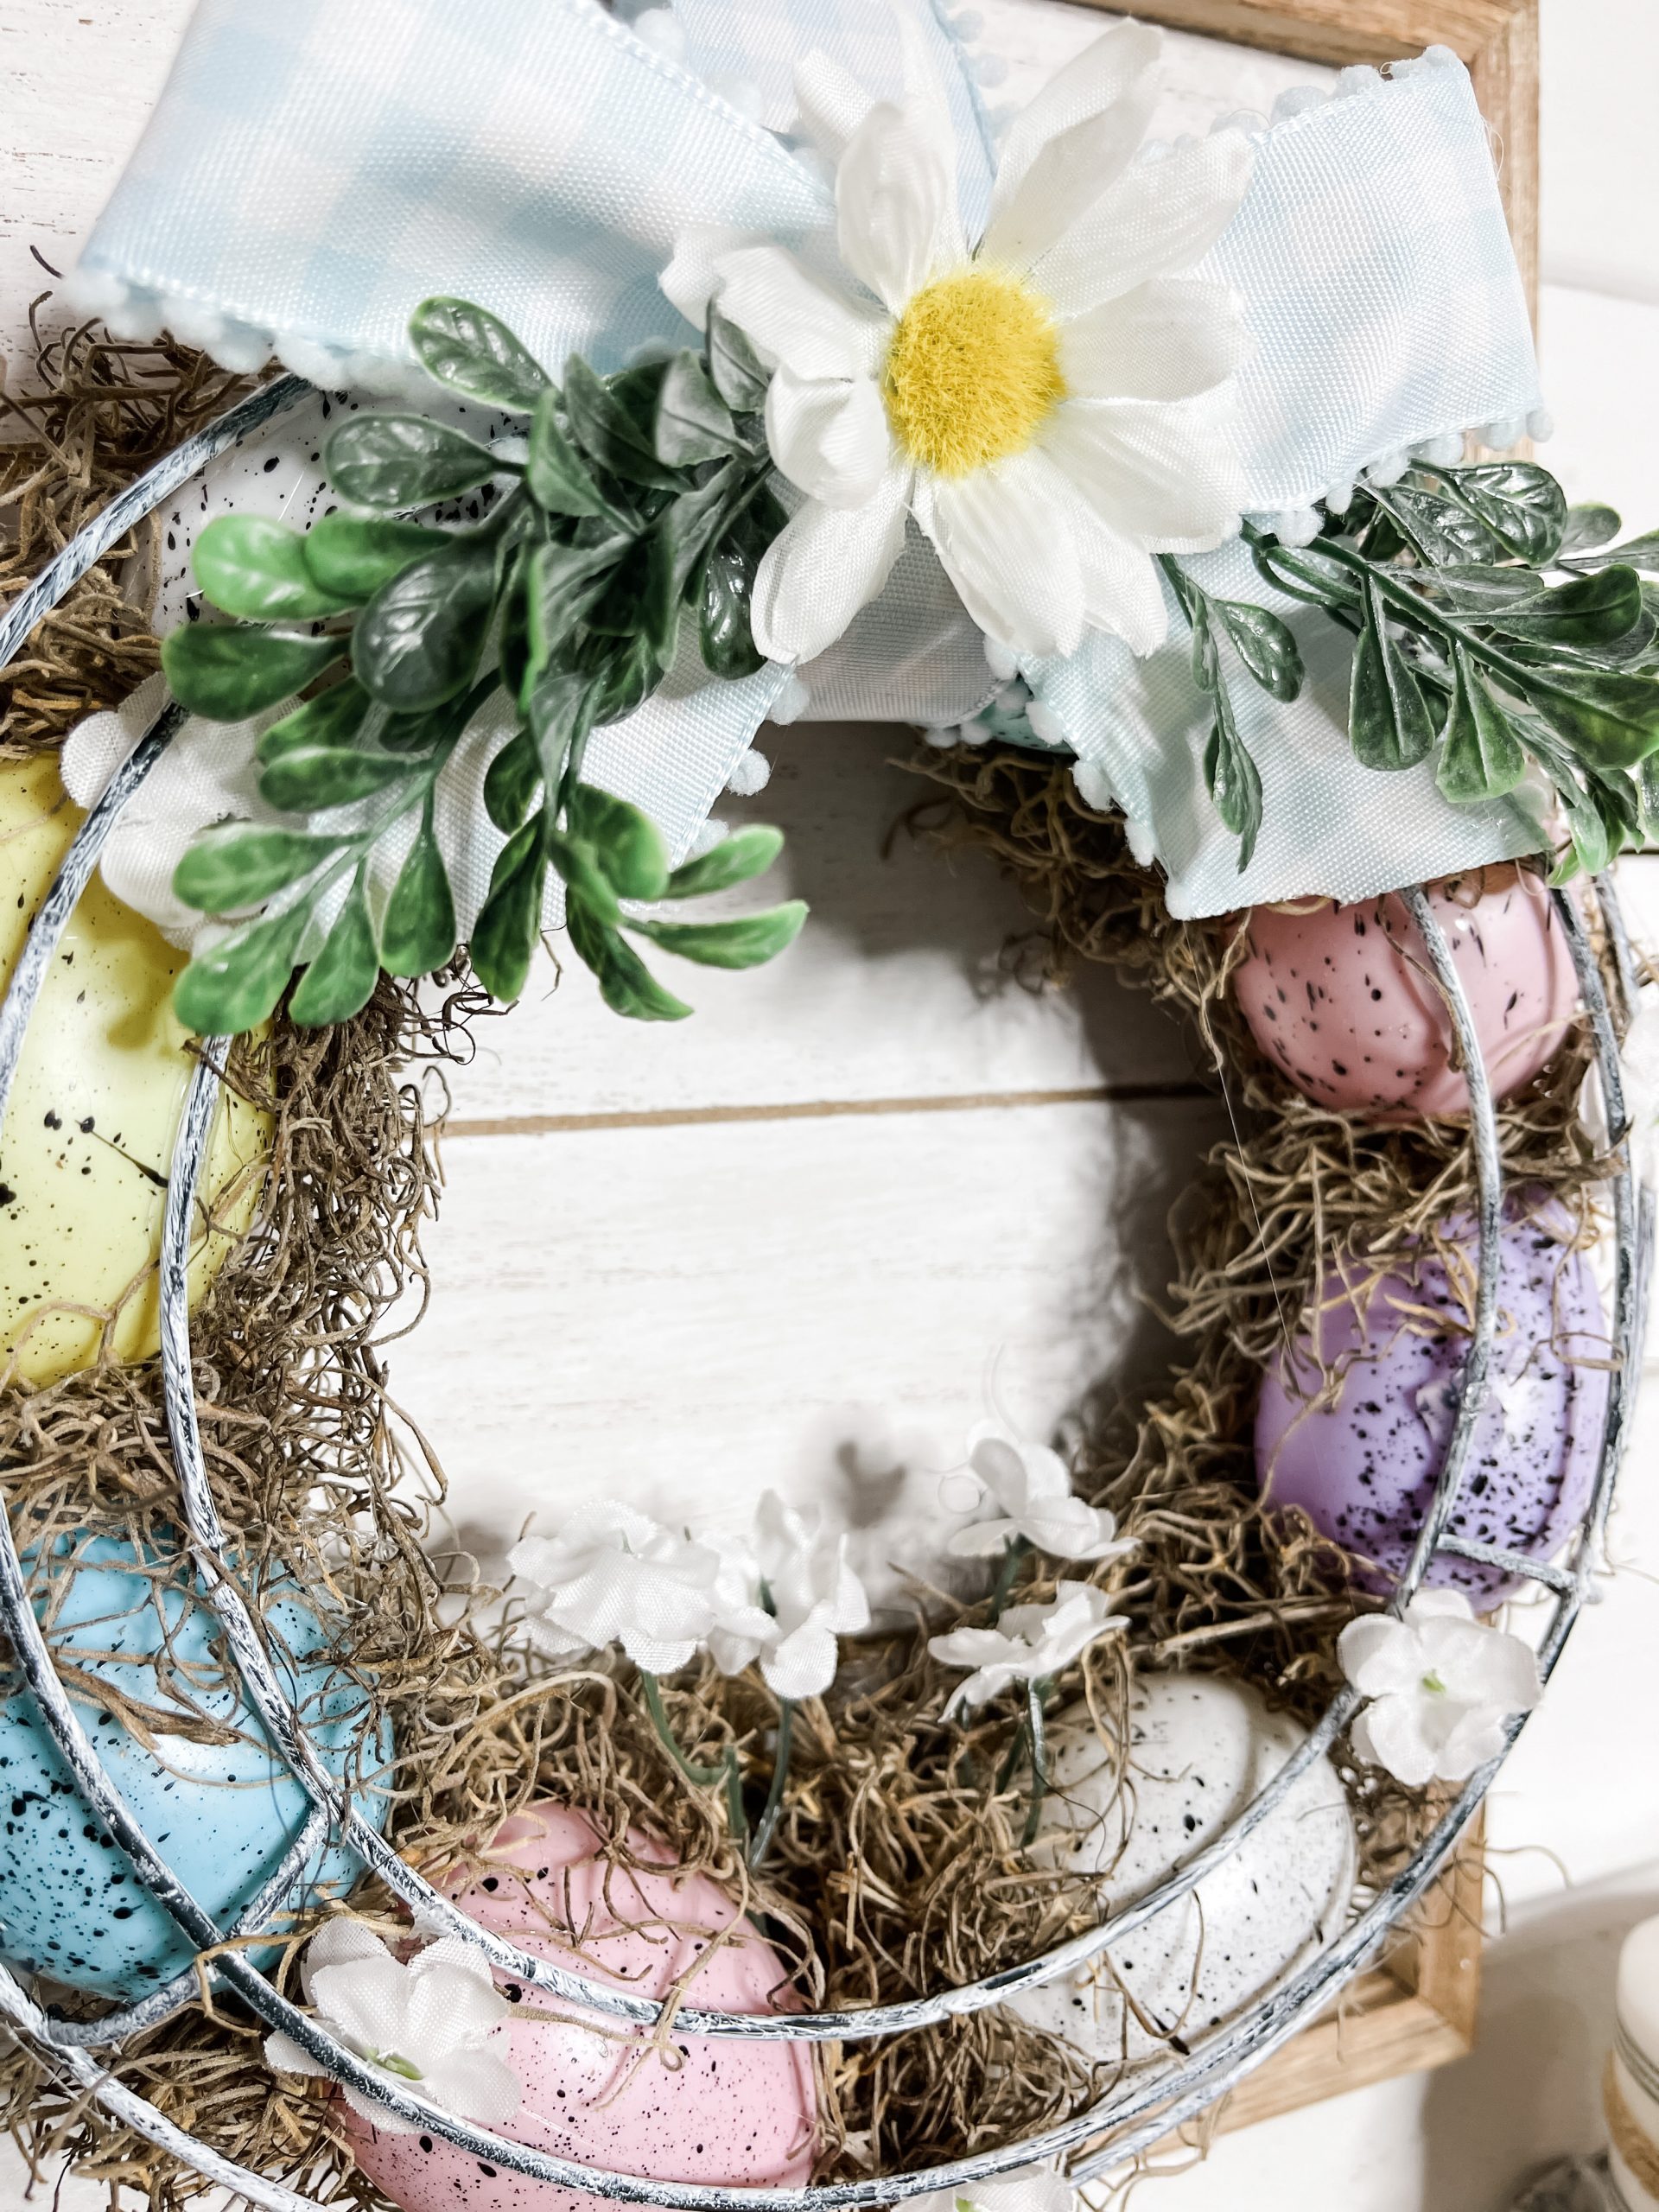 Farmhouse Speckled Egg Wreath